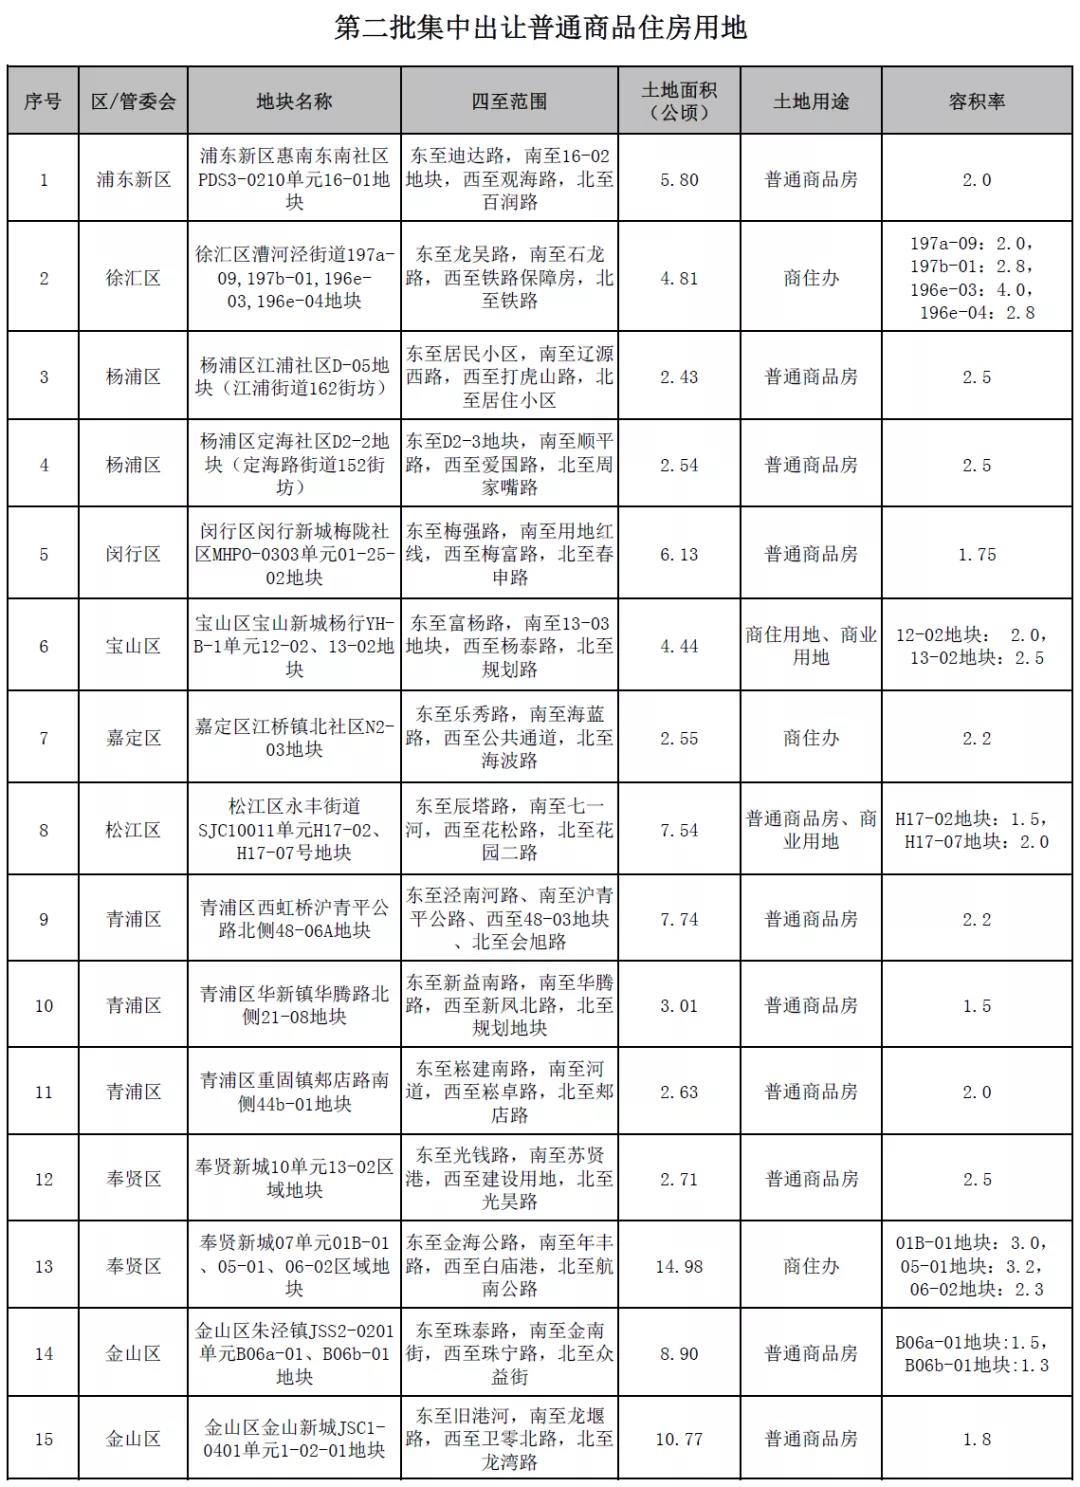 上海第二批集中供地推出23宗宅地 合计用地面积约149万㎡